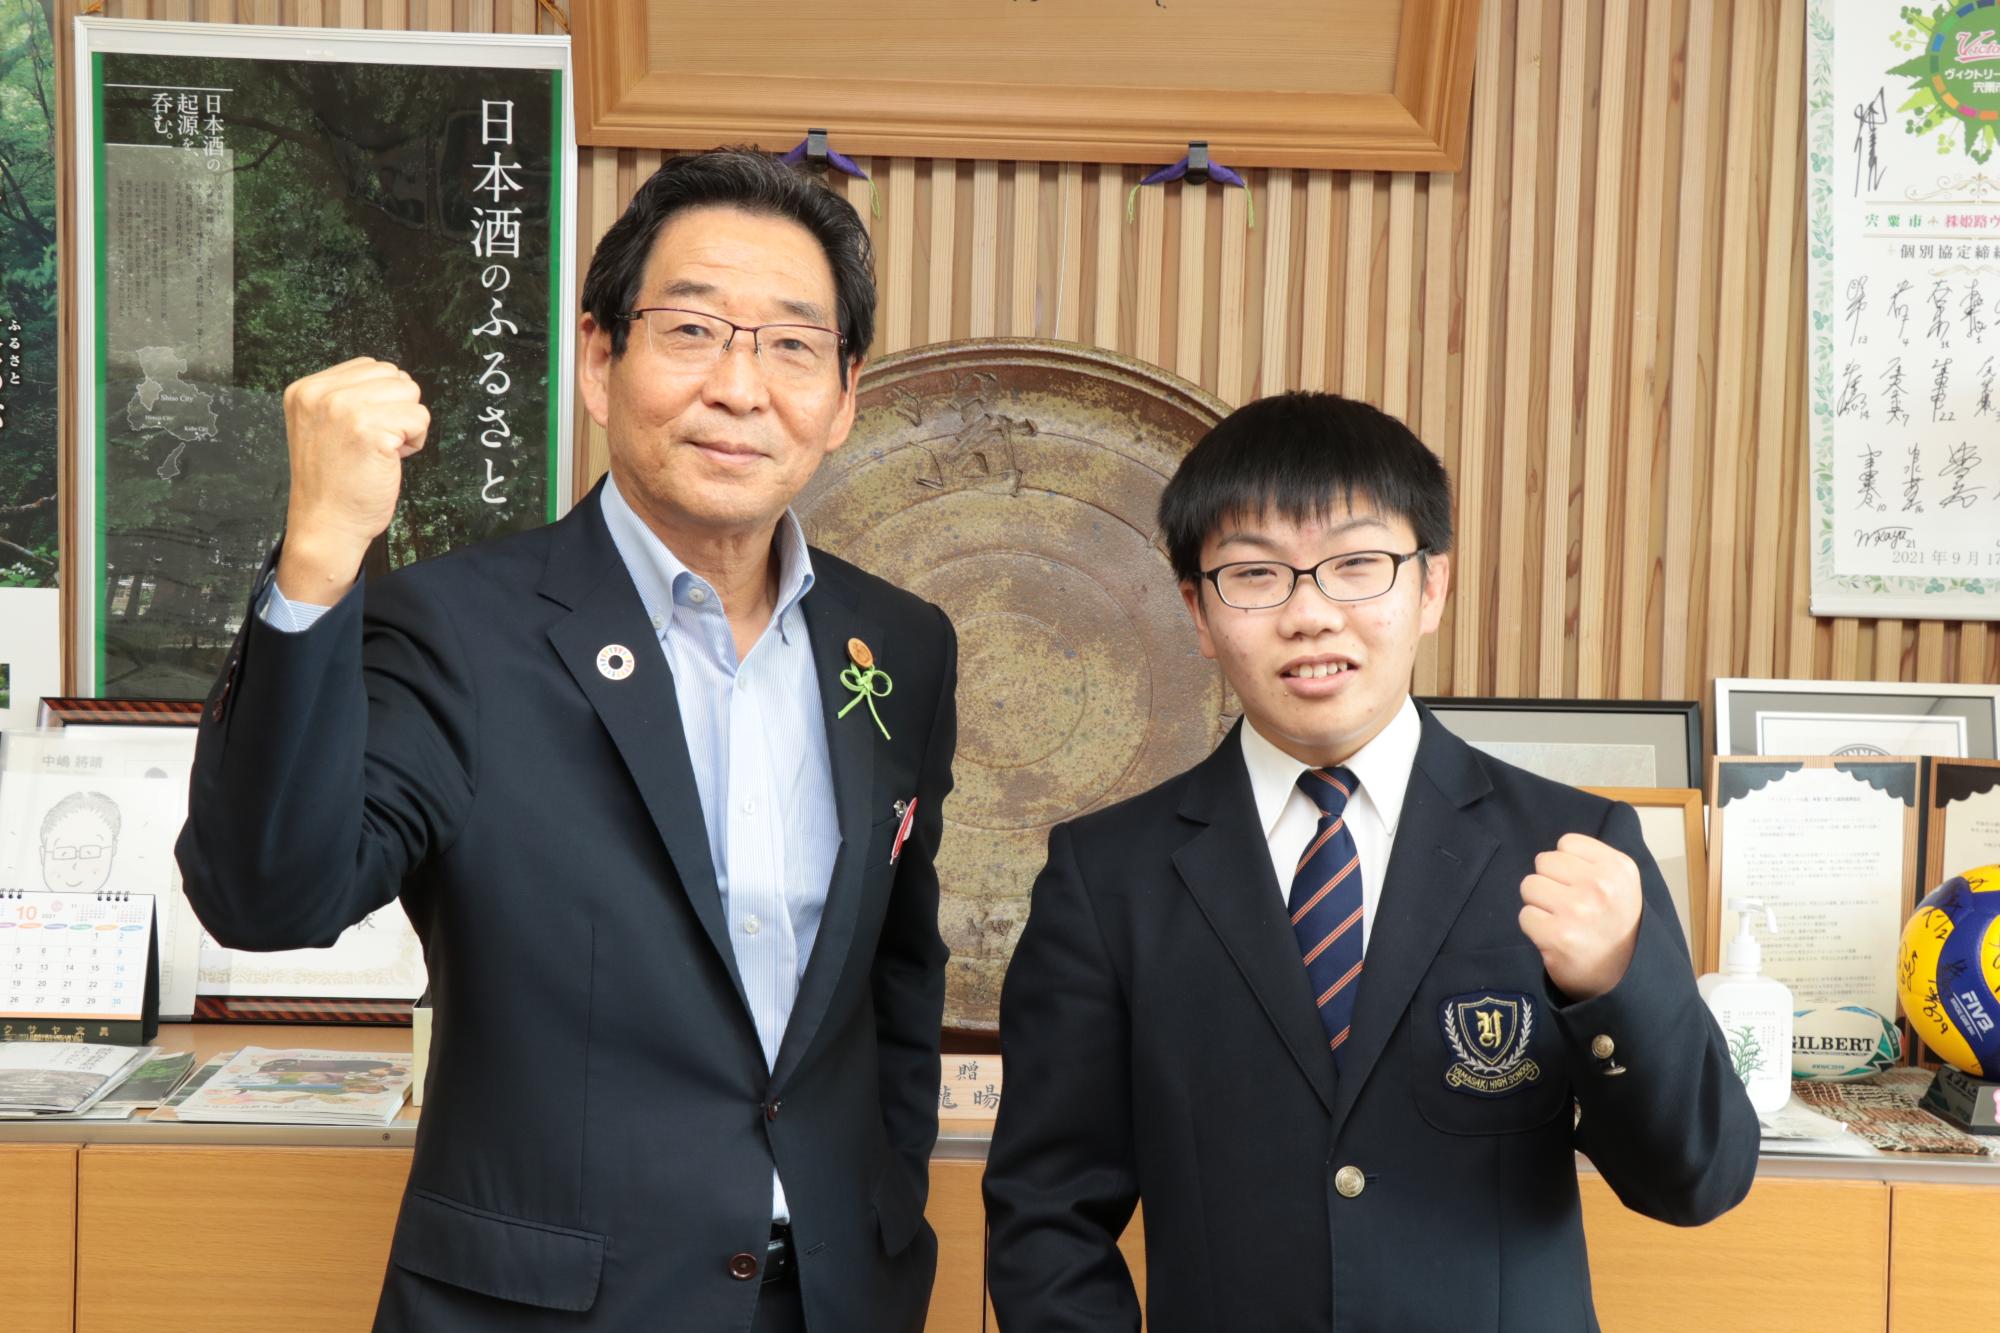 左は福元市長、右は山崎高校3年の西村さんがガッツポーズをしている写真